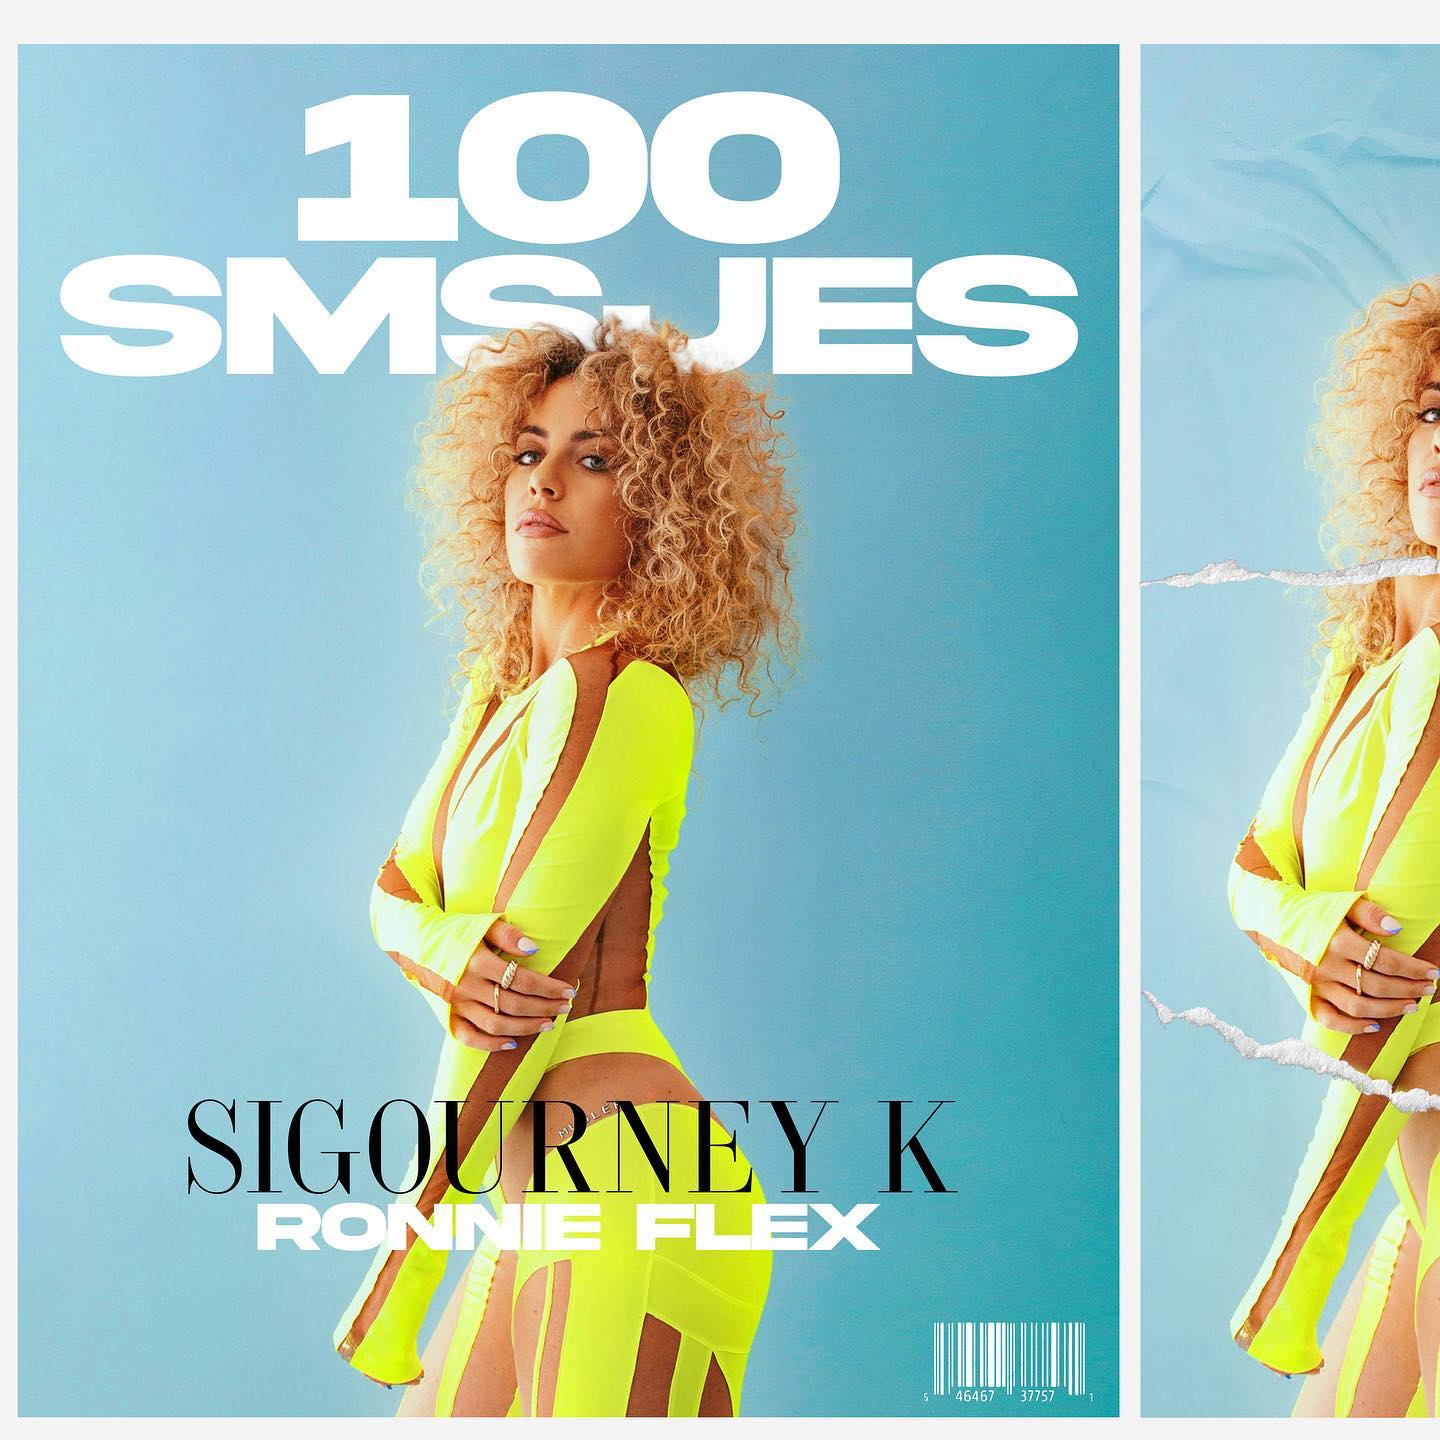 Sigourney K & Ronnie Flex 100 SMSjes cover artwork